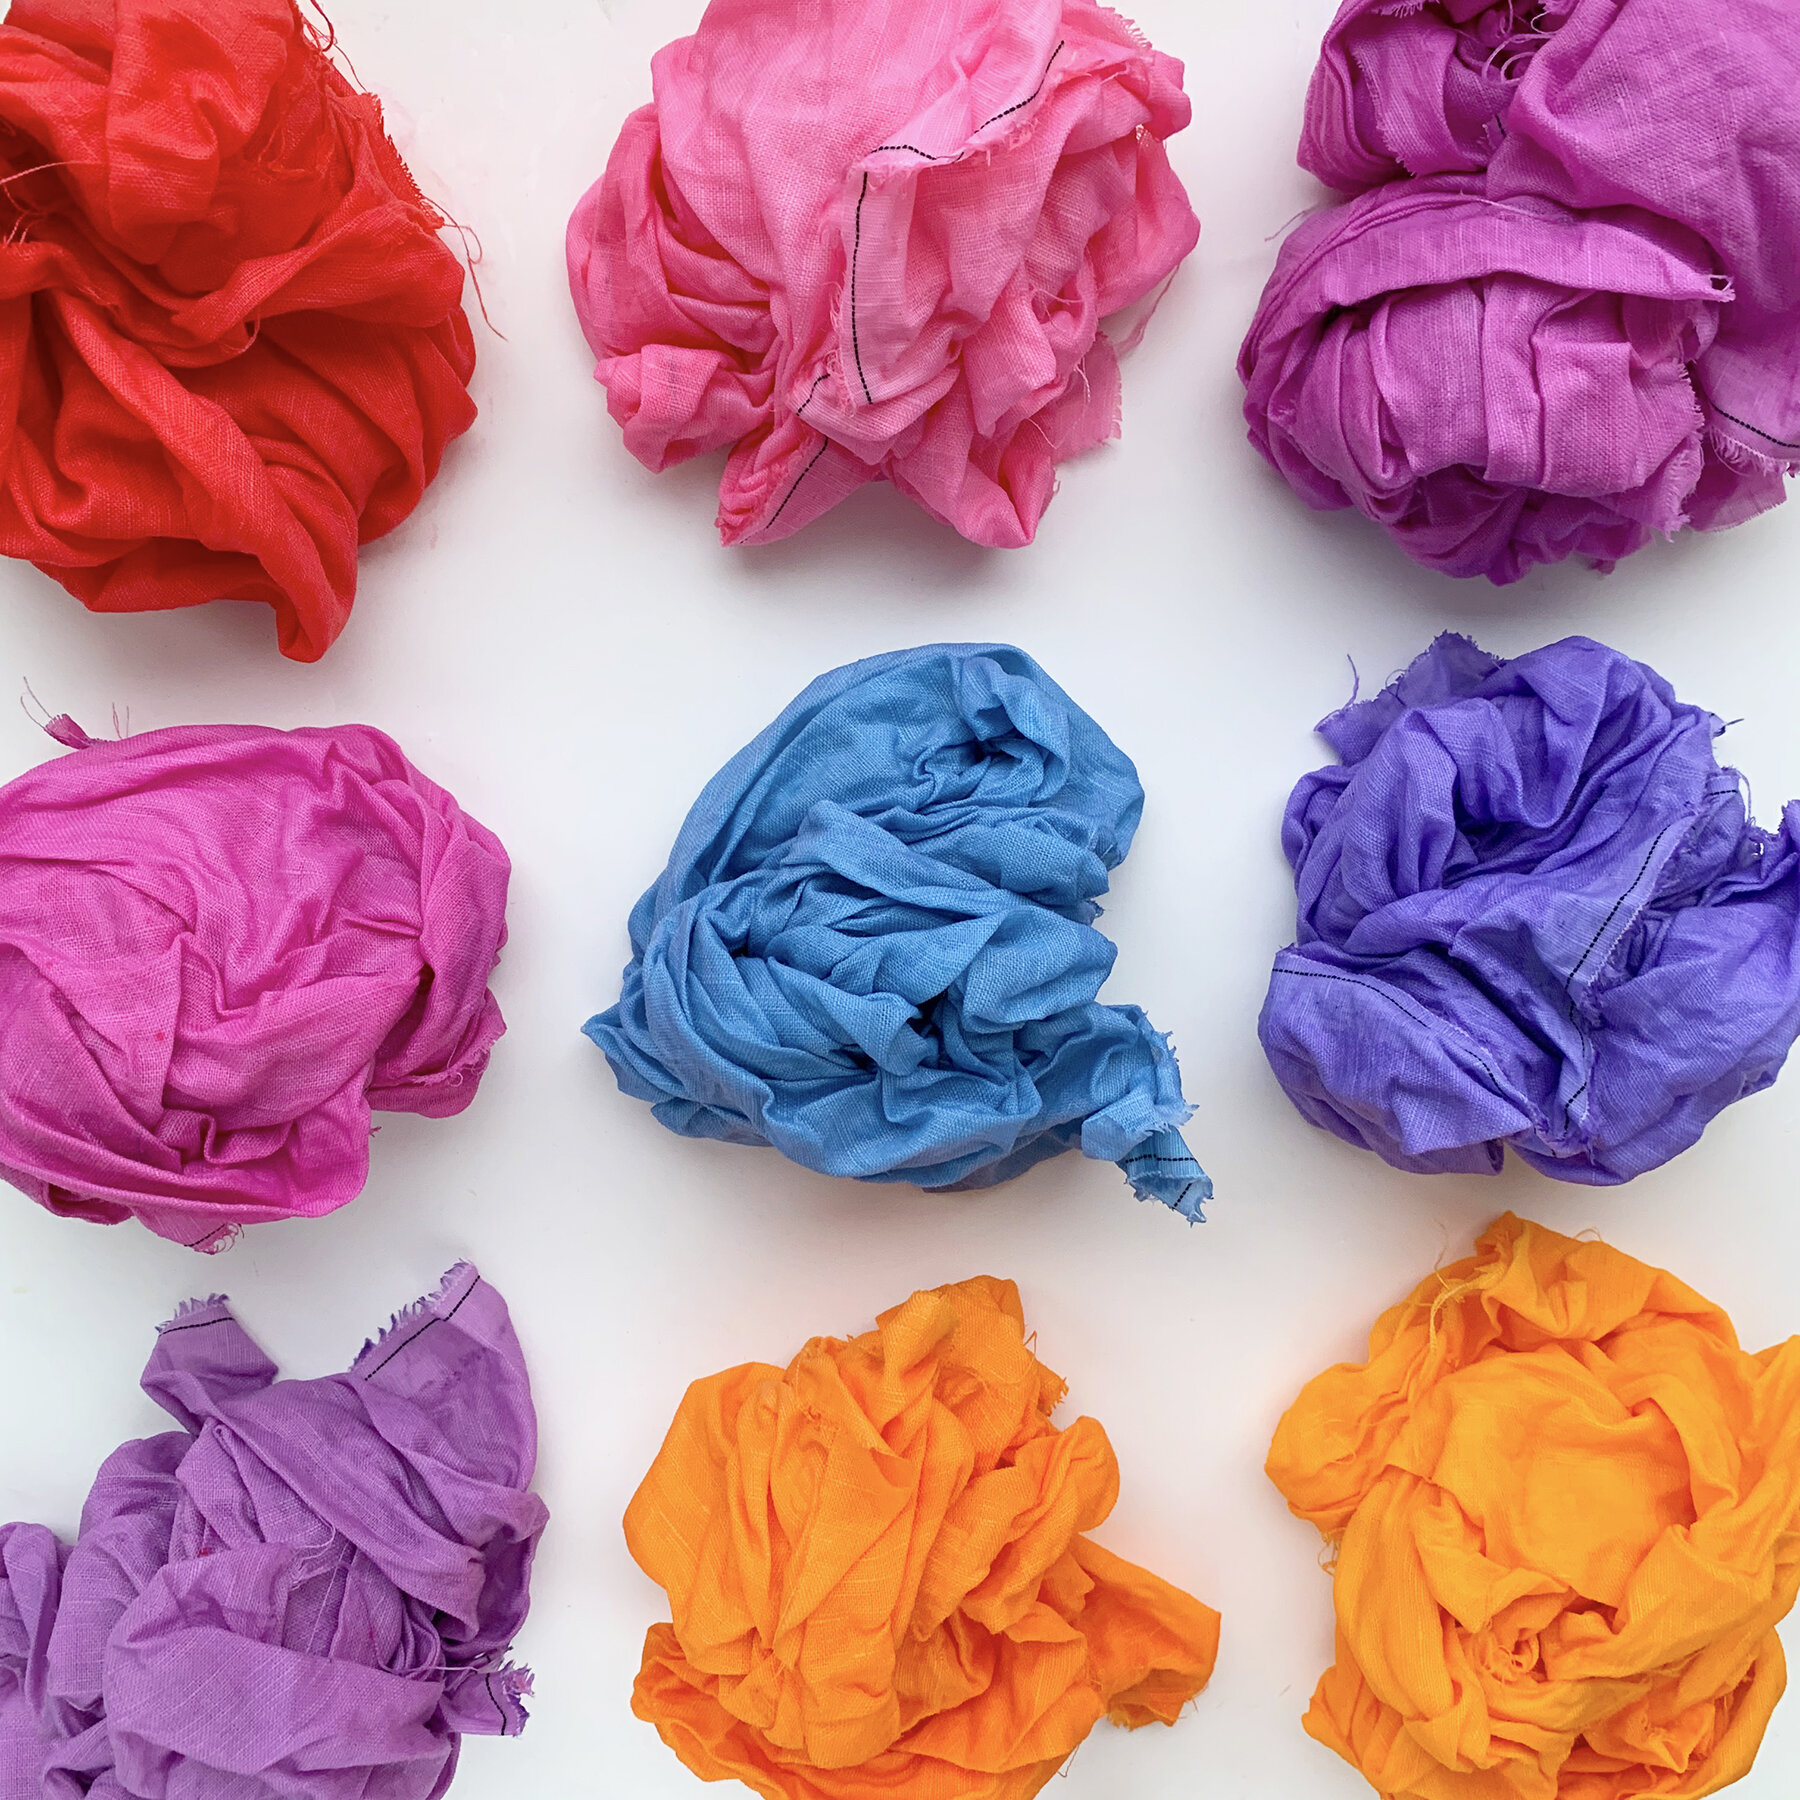 Tulip Tie-Dye Refills Color Wheel 30 Pack